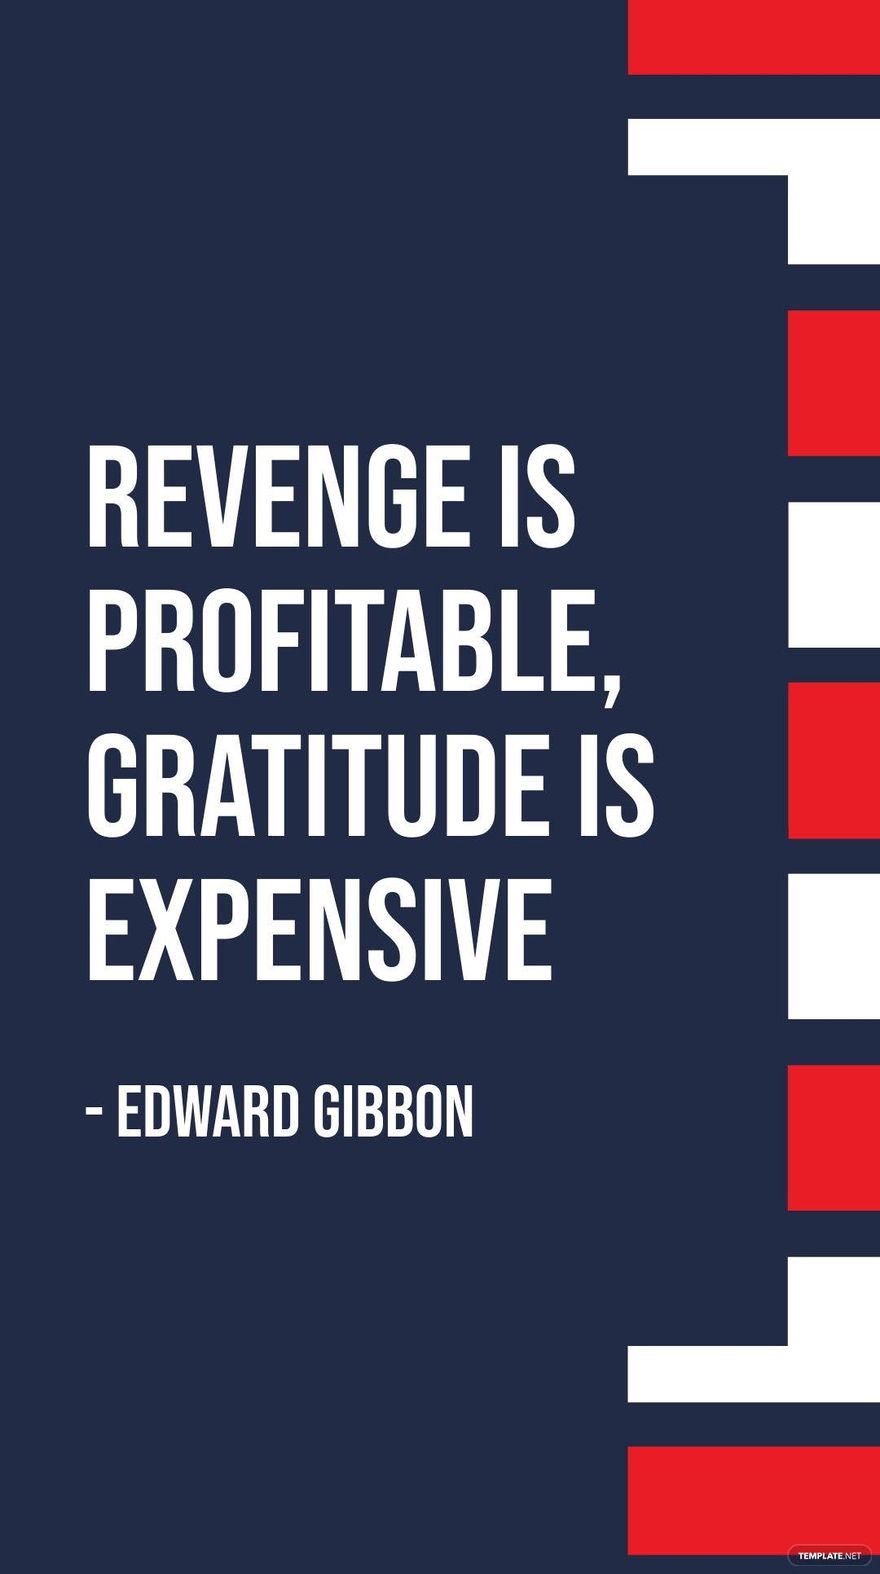 Edward Gibbon - Revenge is profitable, gratitude is expensive in JPG